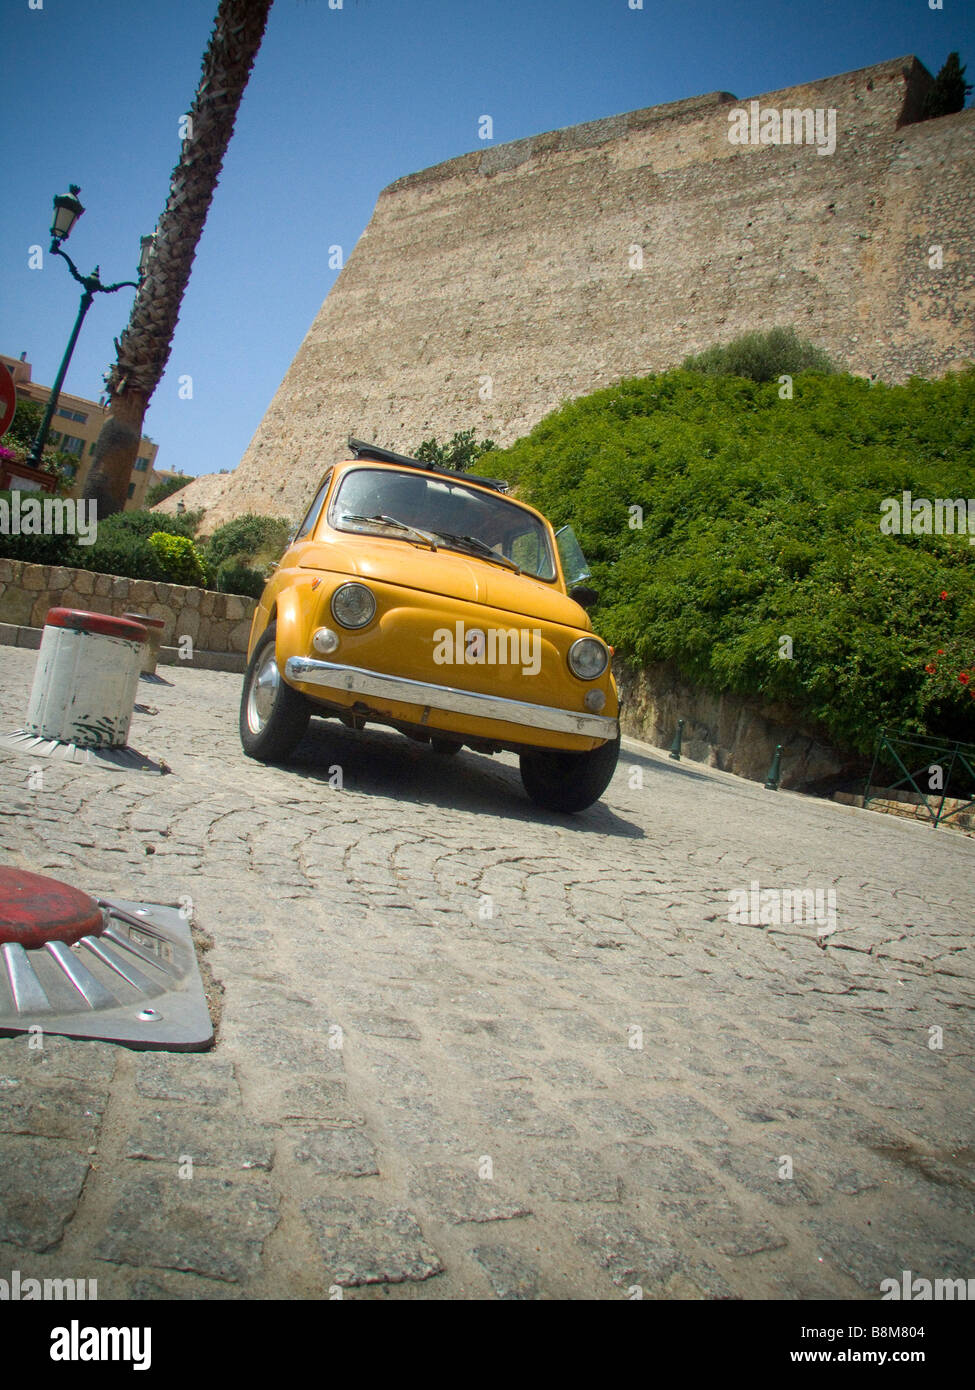 Une Fiat 500 jaune garée sur des pavés Banque D'Images